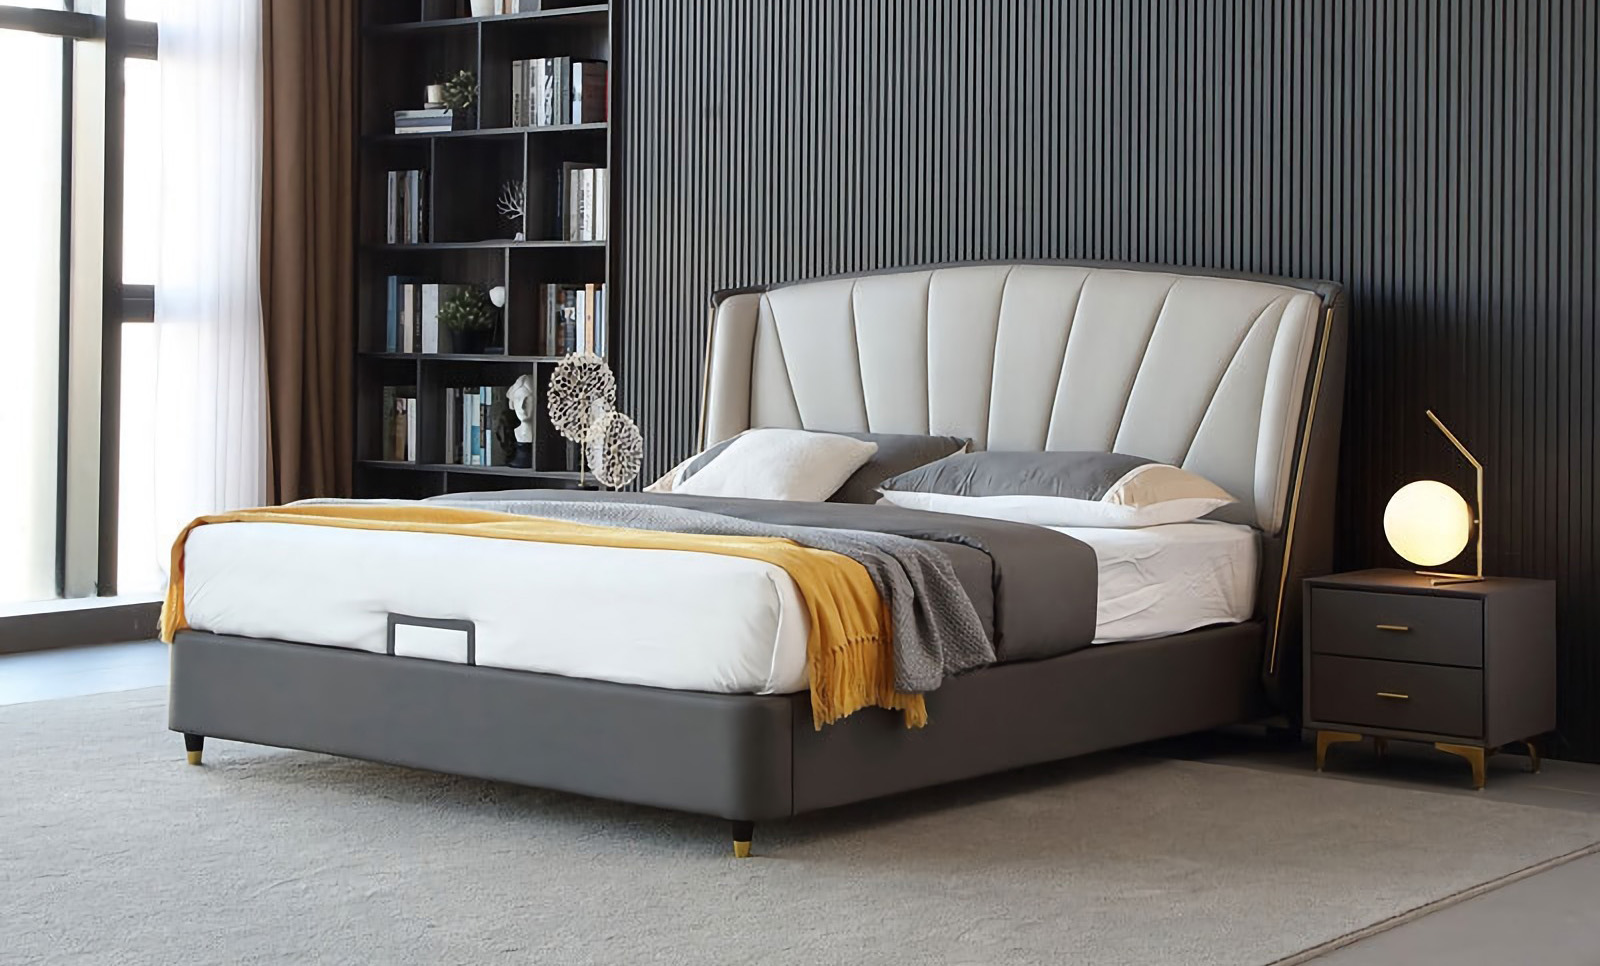 คุณสมบัติการออกแบบเตียงเรียบง่ายทันสมัยของเตียงเรียบง่ายทันสมัย